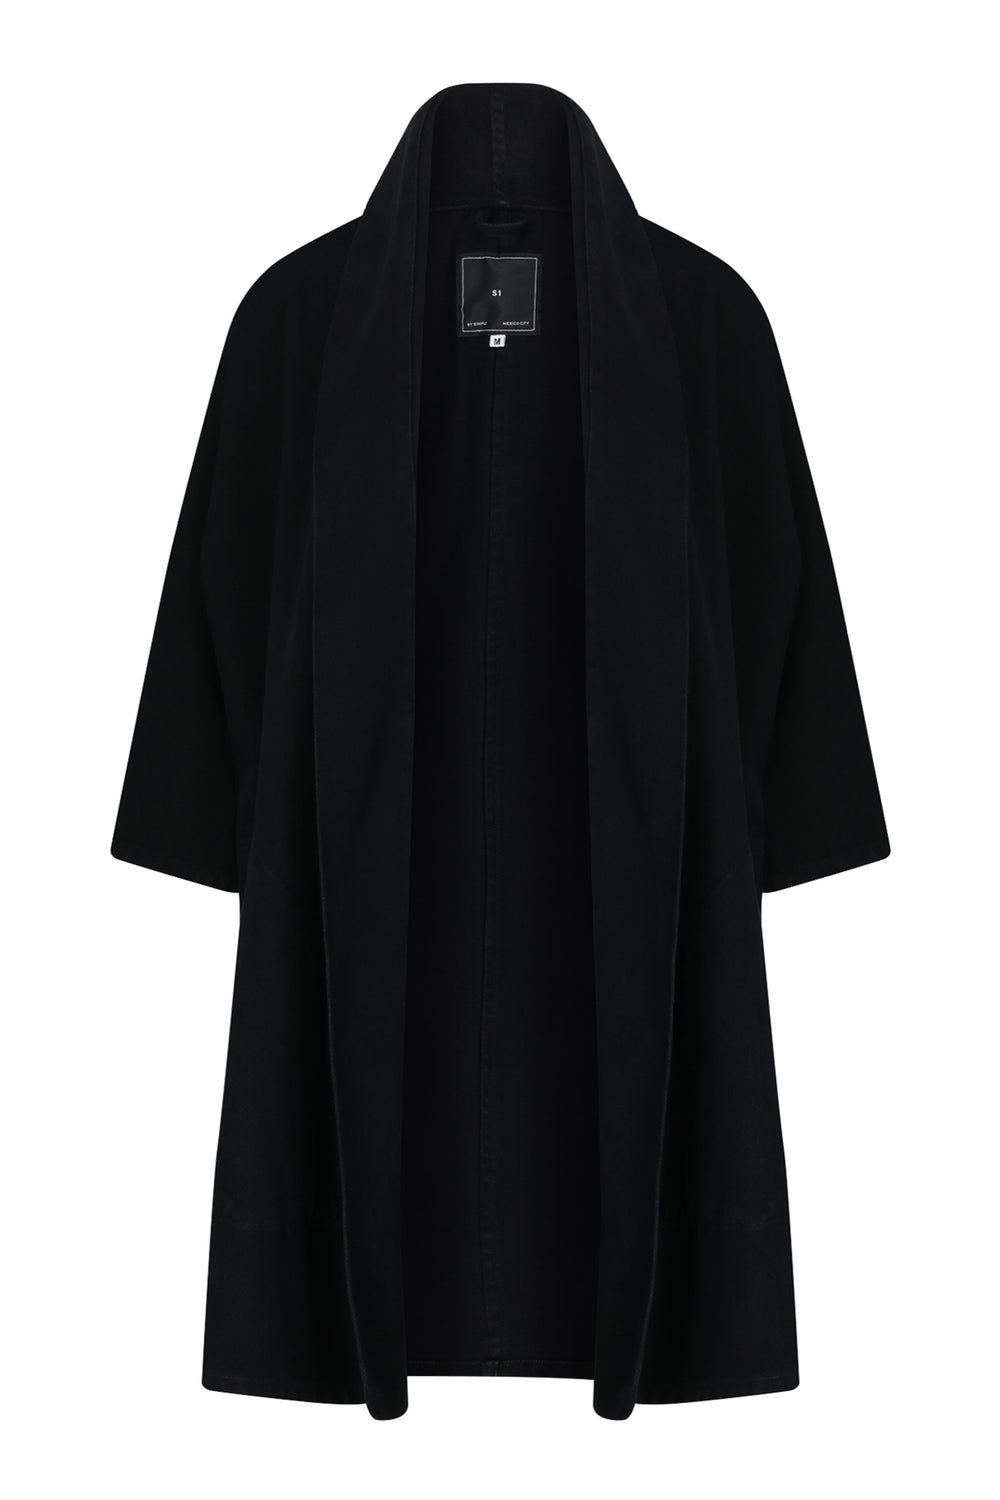 Pollux Black Denim Open Kimono Coat - Simple by Trista